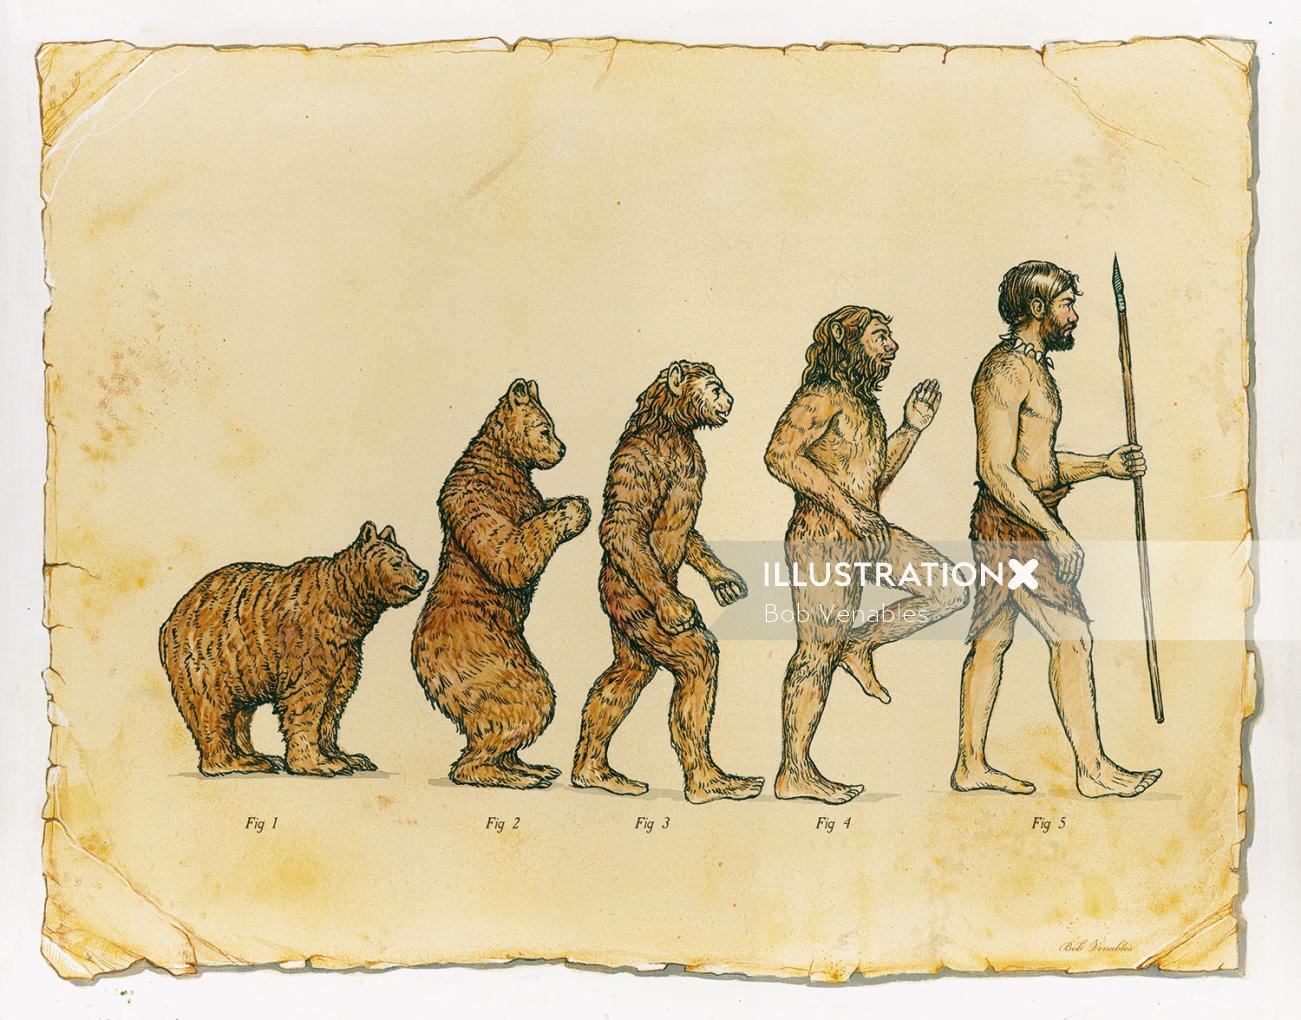 Editorial illustration of Human Evolution